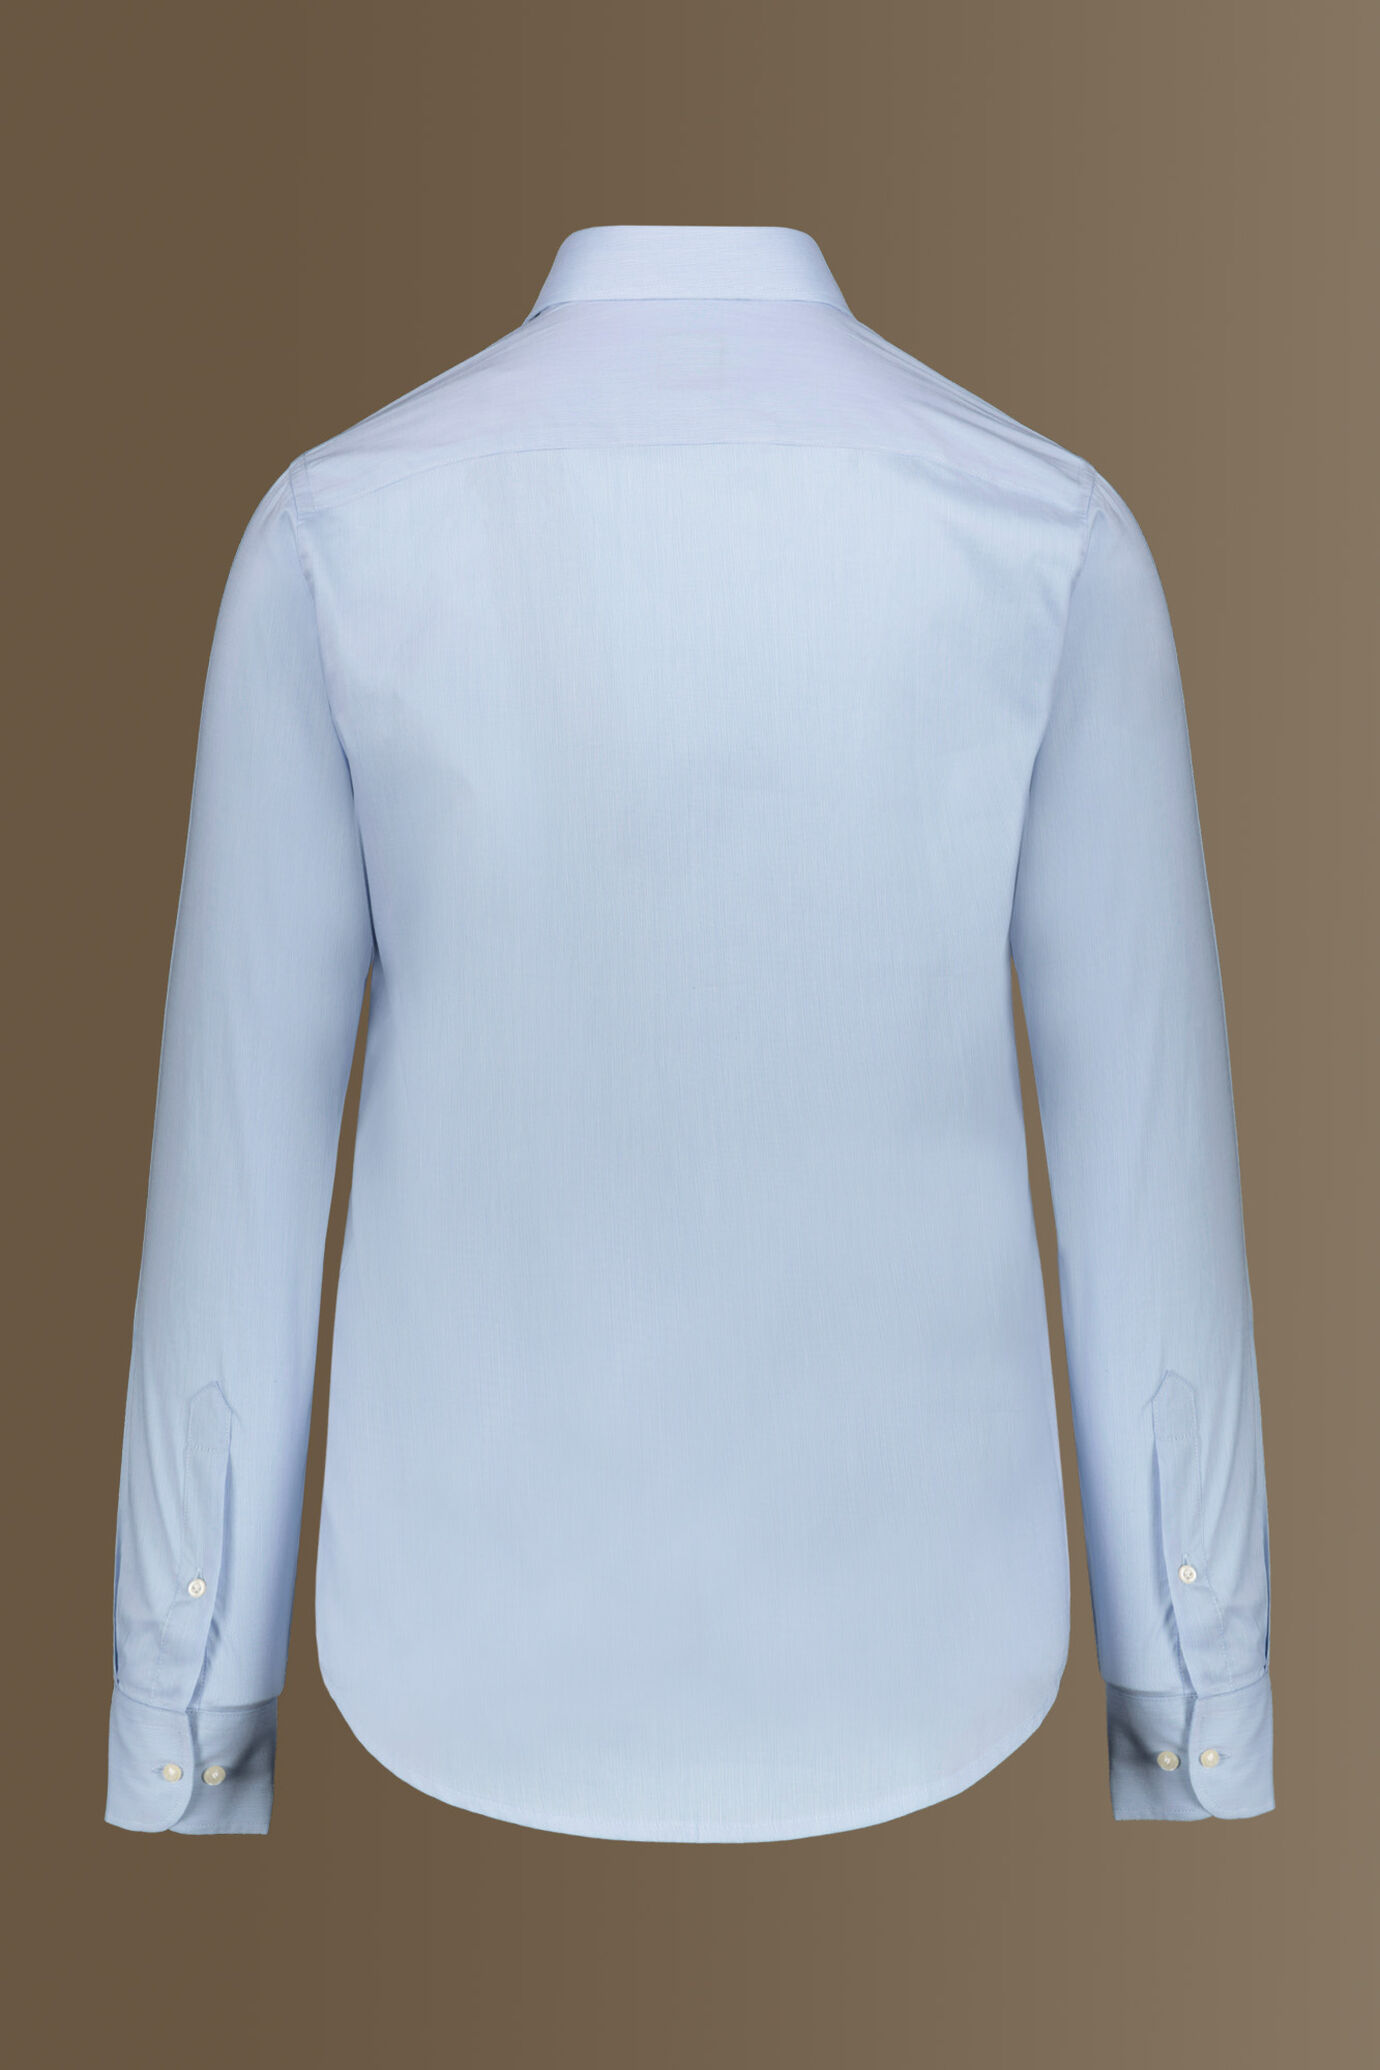 Camicia classica uomo collo francese 100% cotone tinto filo a righe sottili image number 1